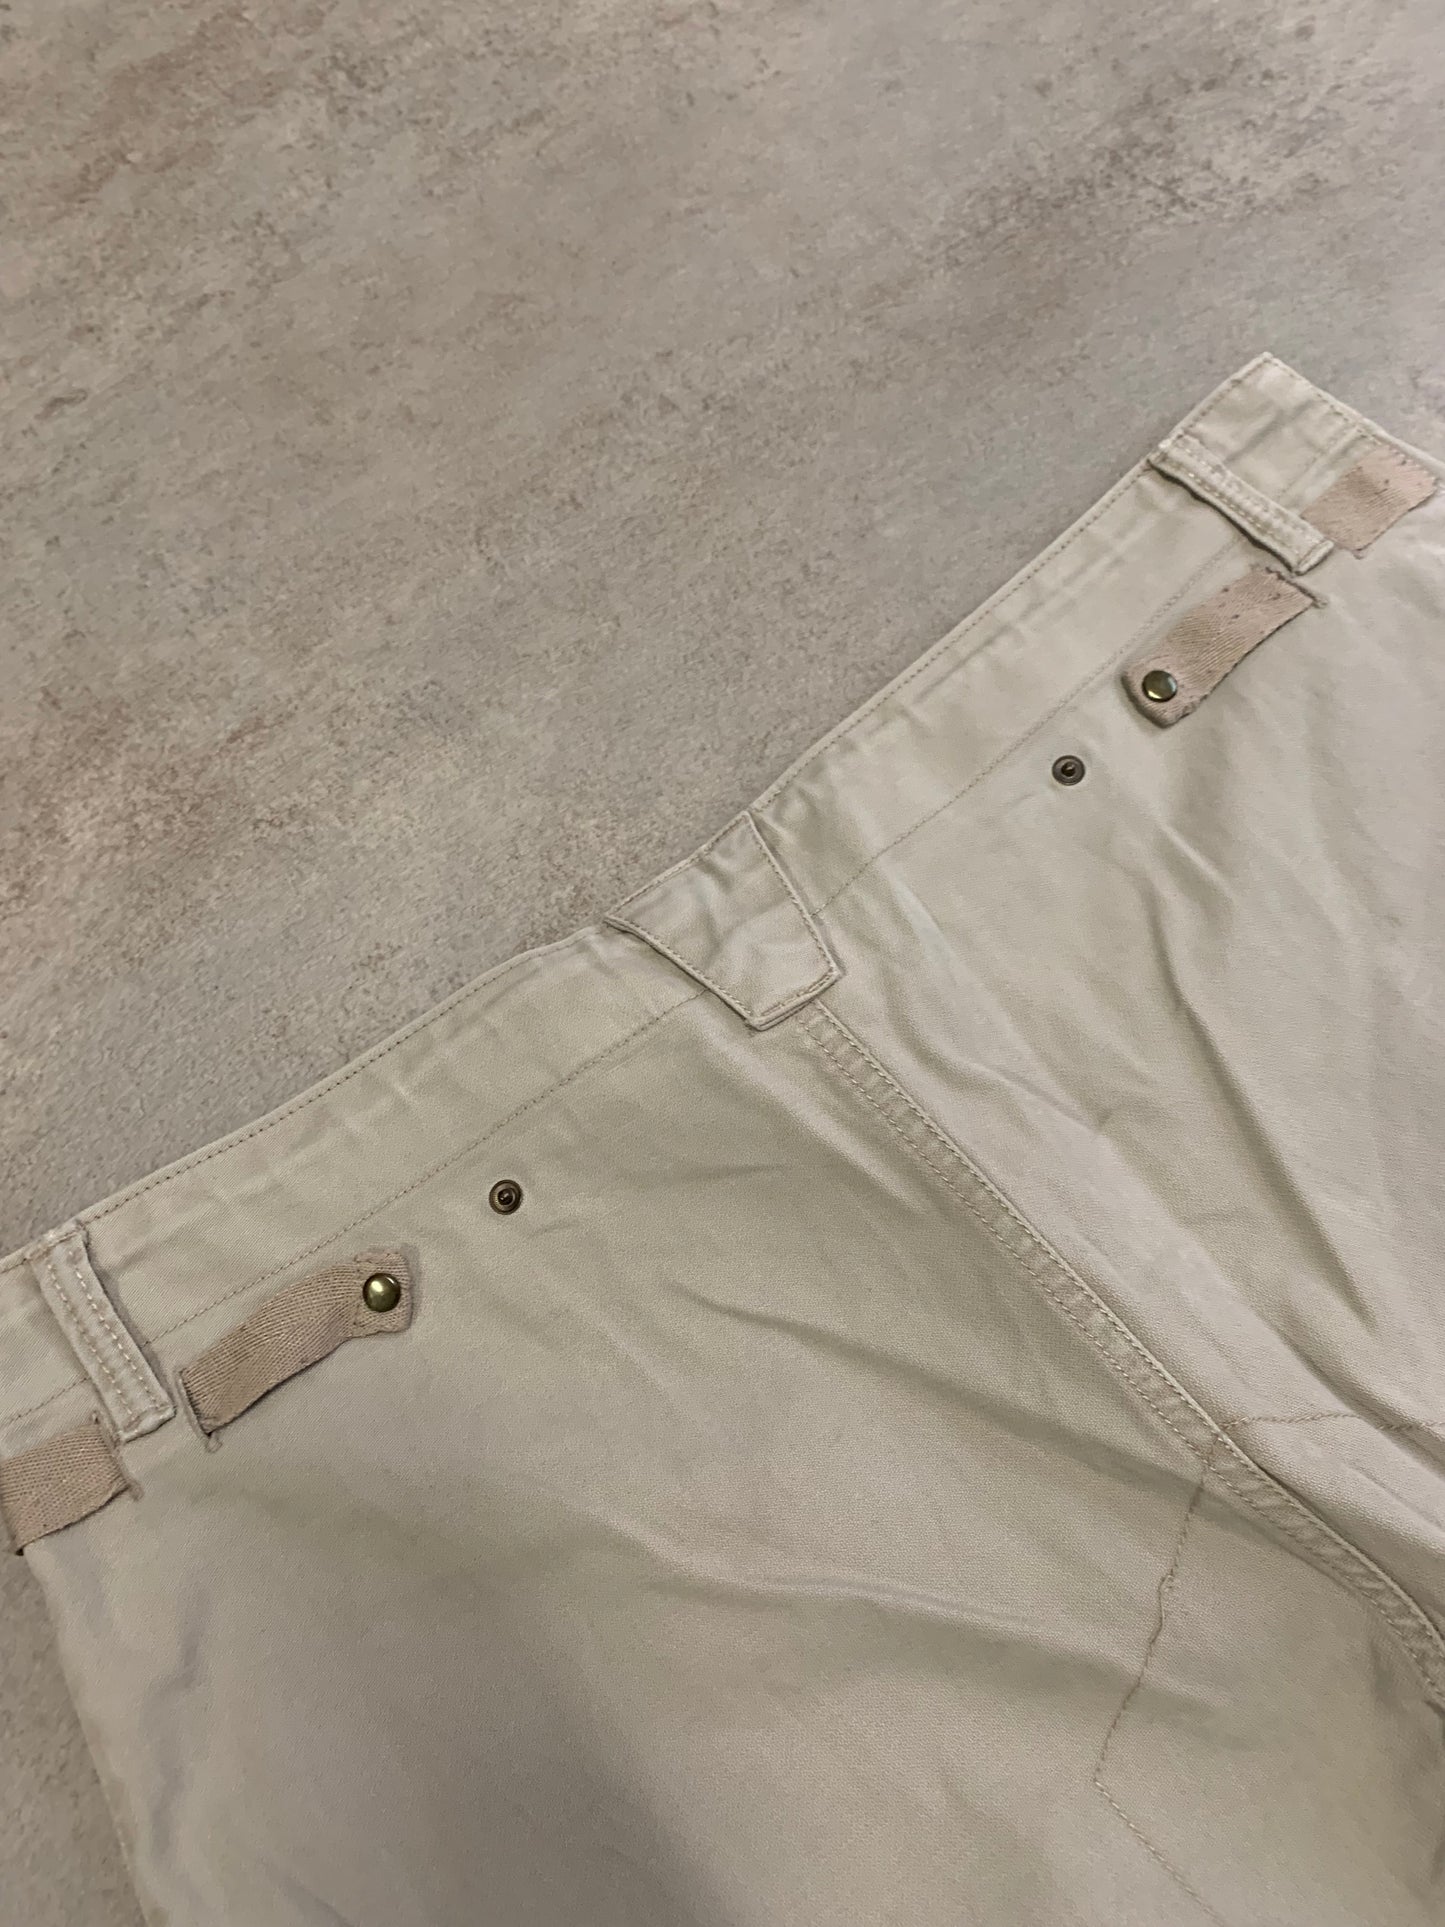 Worker Baggy Pants Vintage Nike 00's